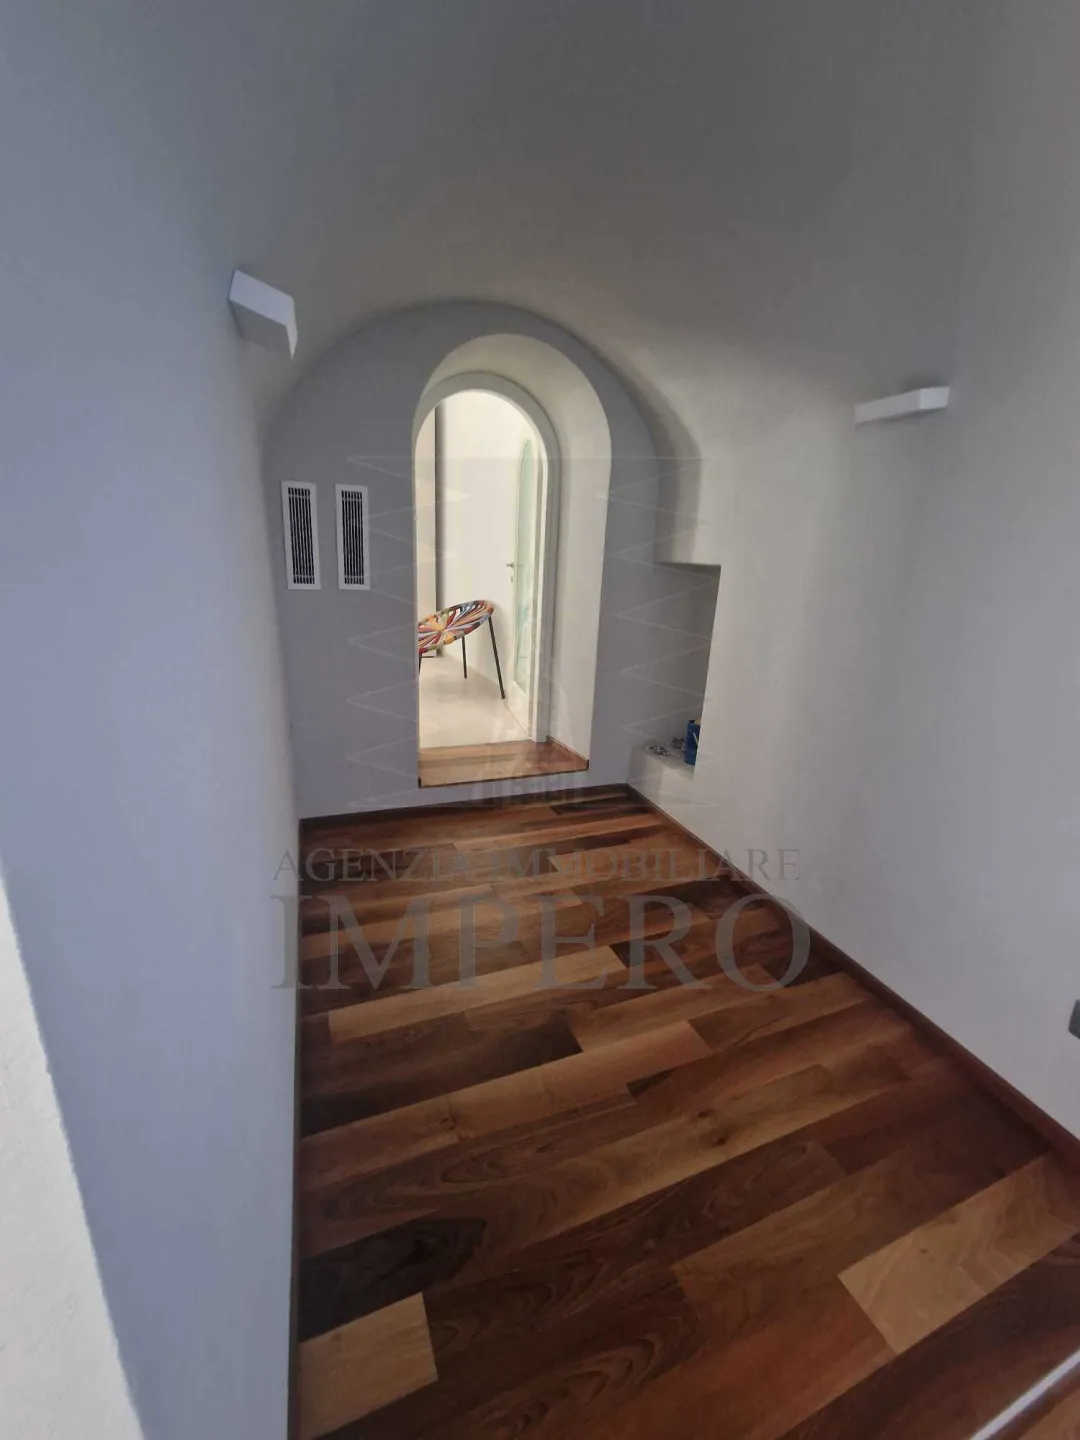 Immagine per Porzione di casa in vendita a Ventimiglia piazza Angeli Custodi 50